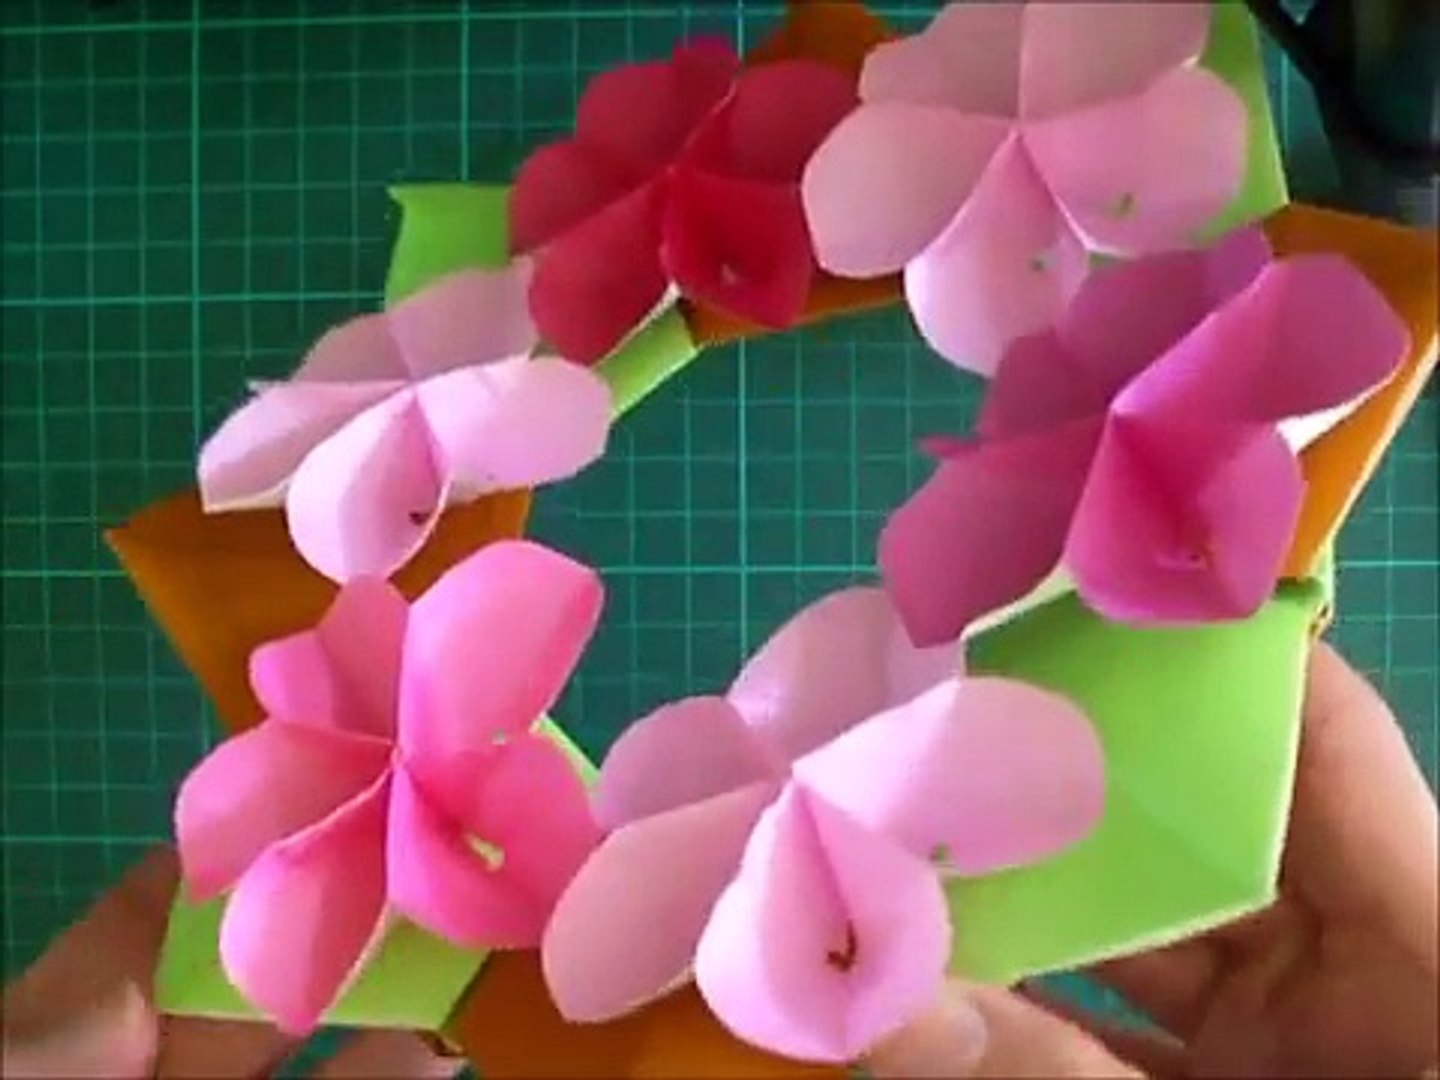 折り紙 梅の花 リース 簡単な折り方 Niceno1 Origami Flower Plum Wreath Tutorial Lmzxy8ybtto Video Dailymotion